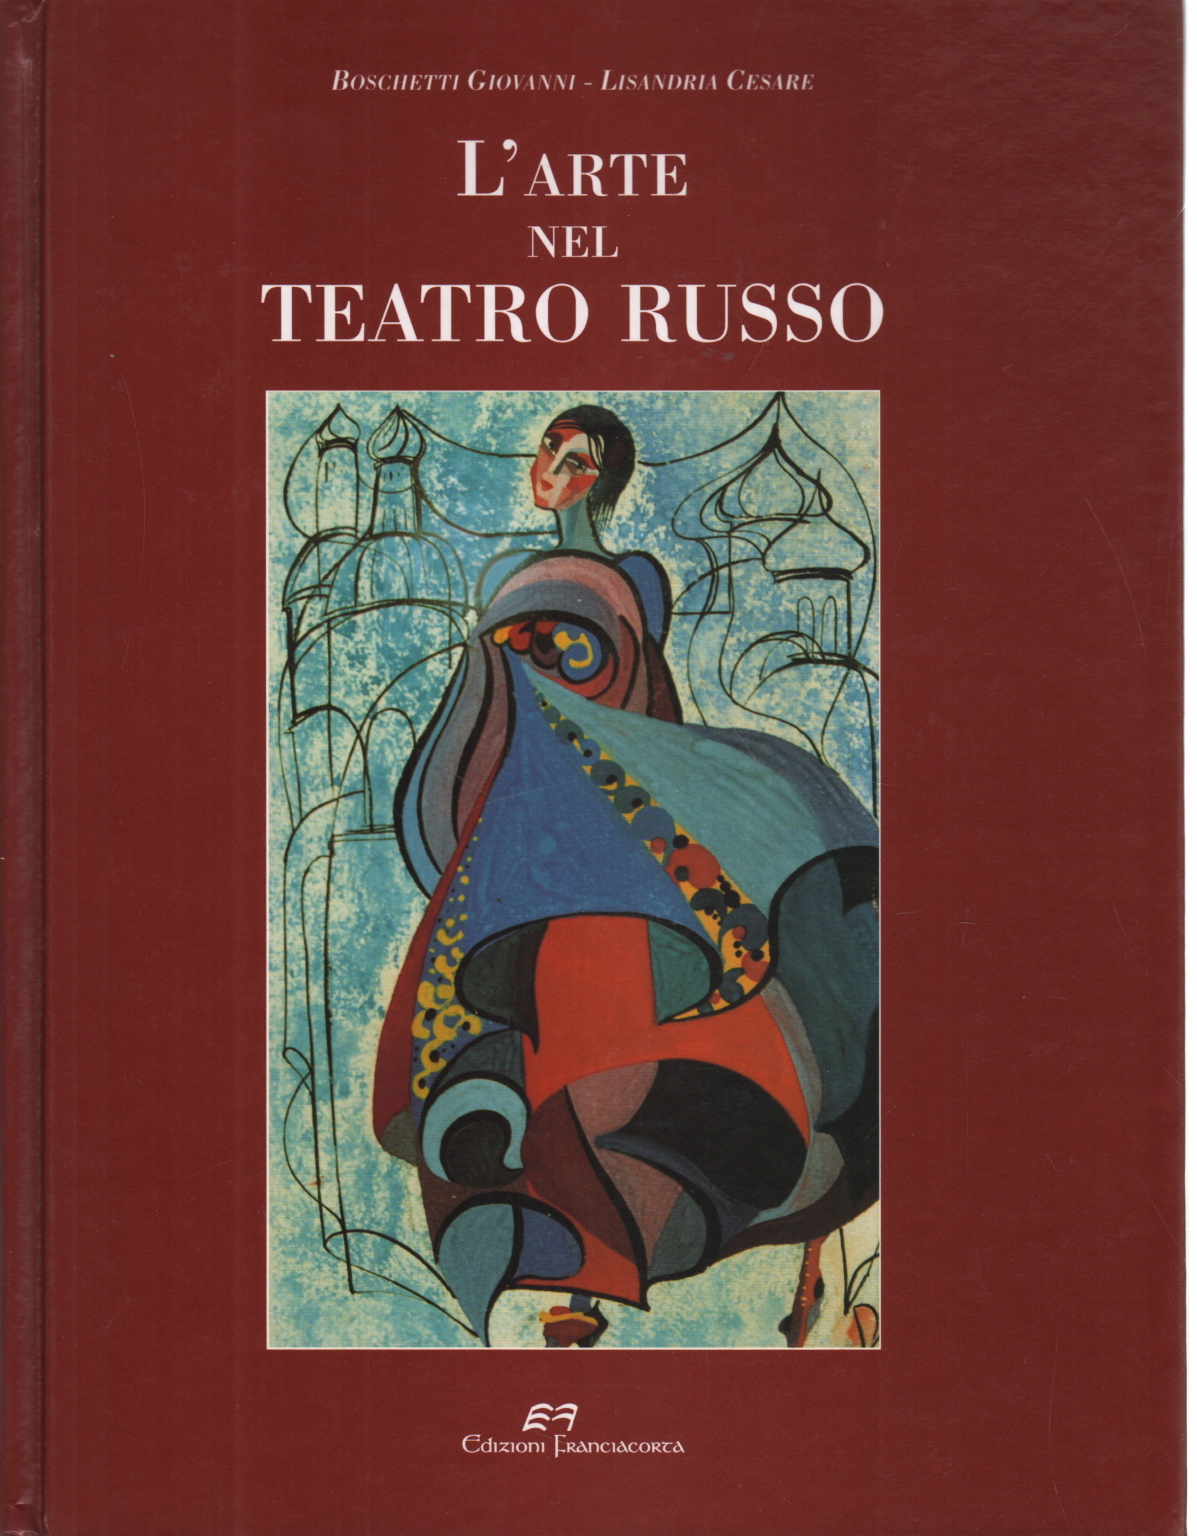 L'arte nel teatro russo, Giovanni Boschetti Cesare Lisandria